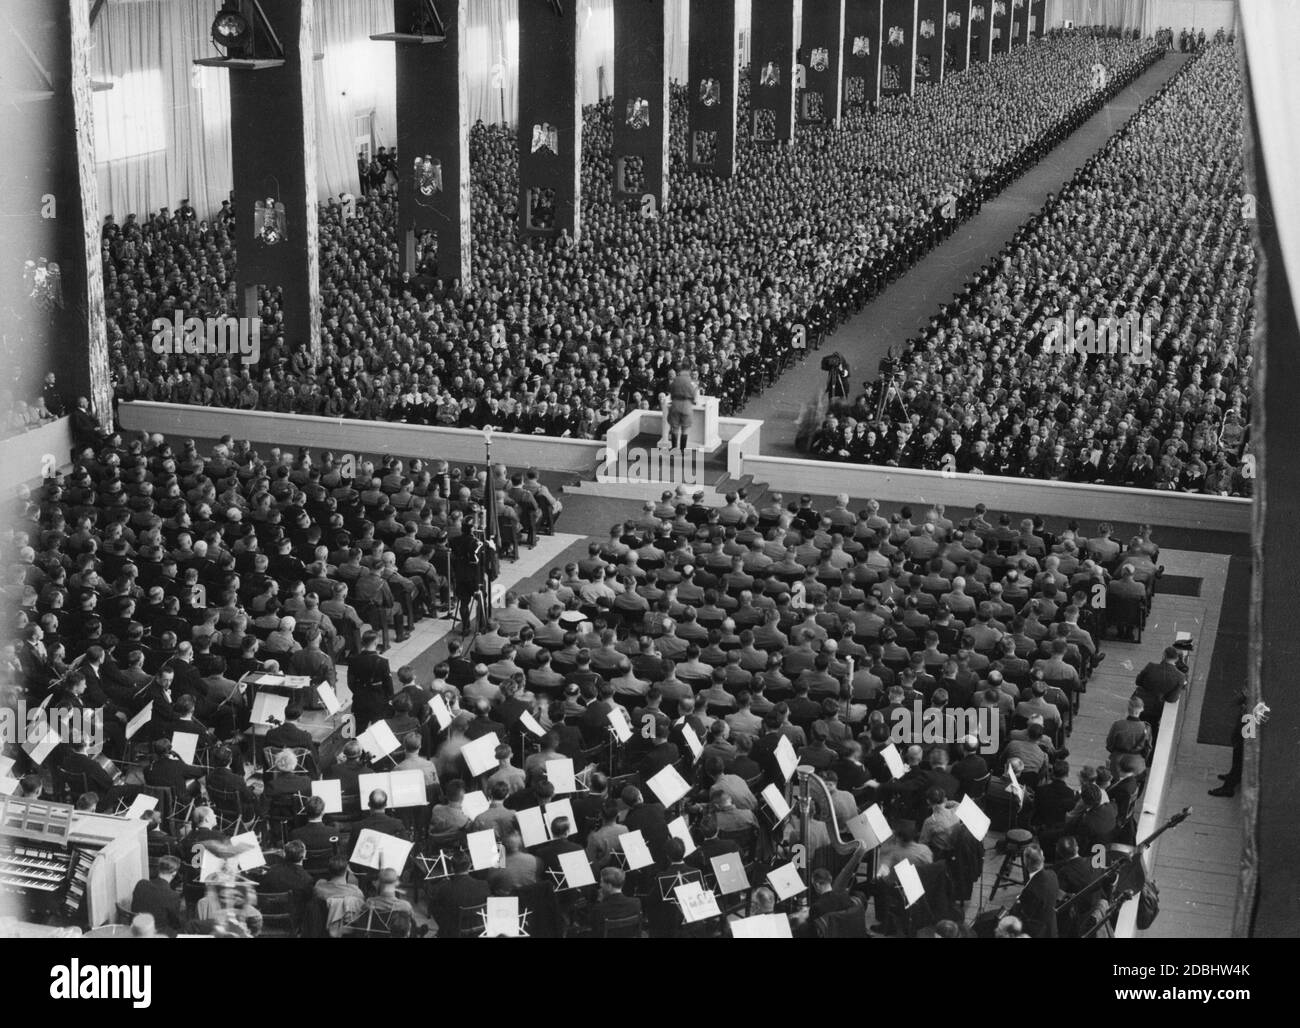 Rudolf Hess prononce un discours à l'ouverture du congrès du parti à Luitpoldhalle de Nuremberg, filmé par un caméraman. Au premier plan se trouve un orchestre de musique. Banque D'Images